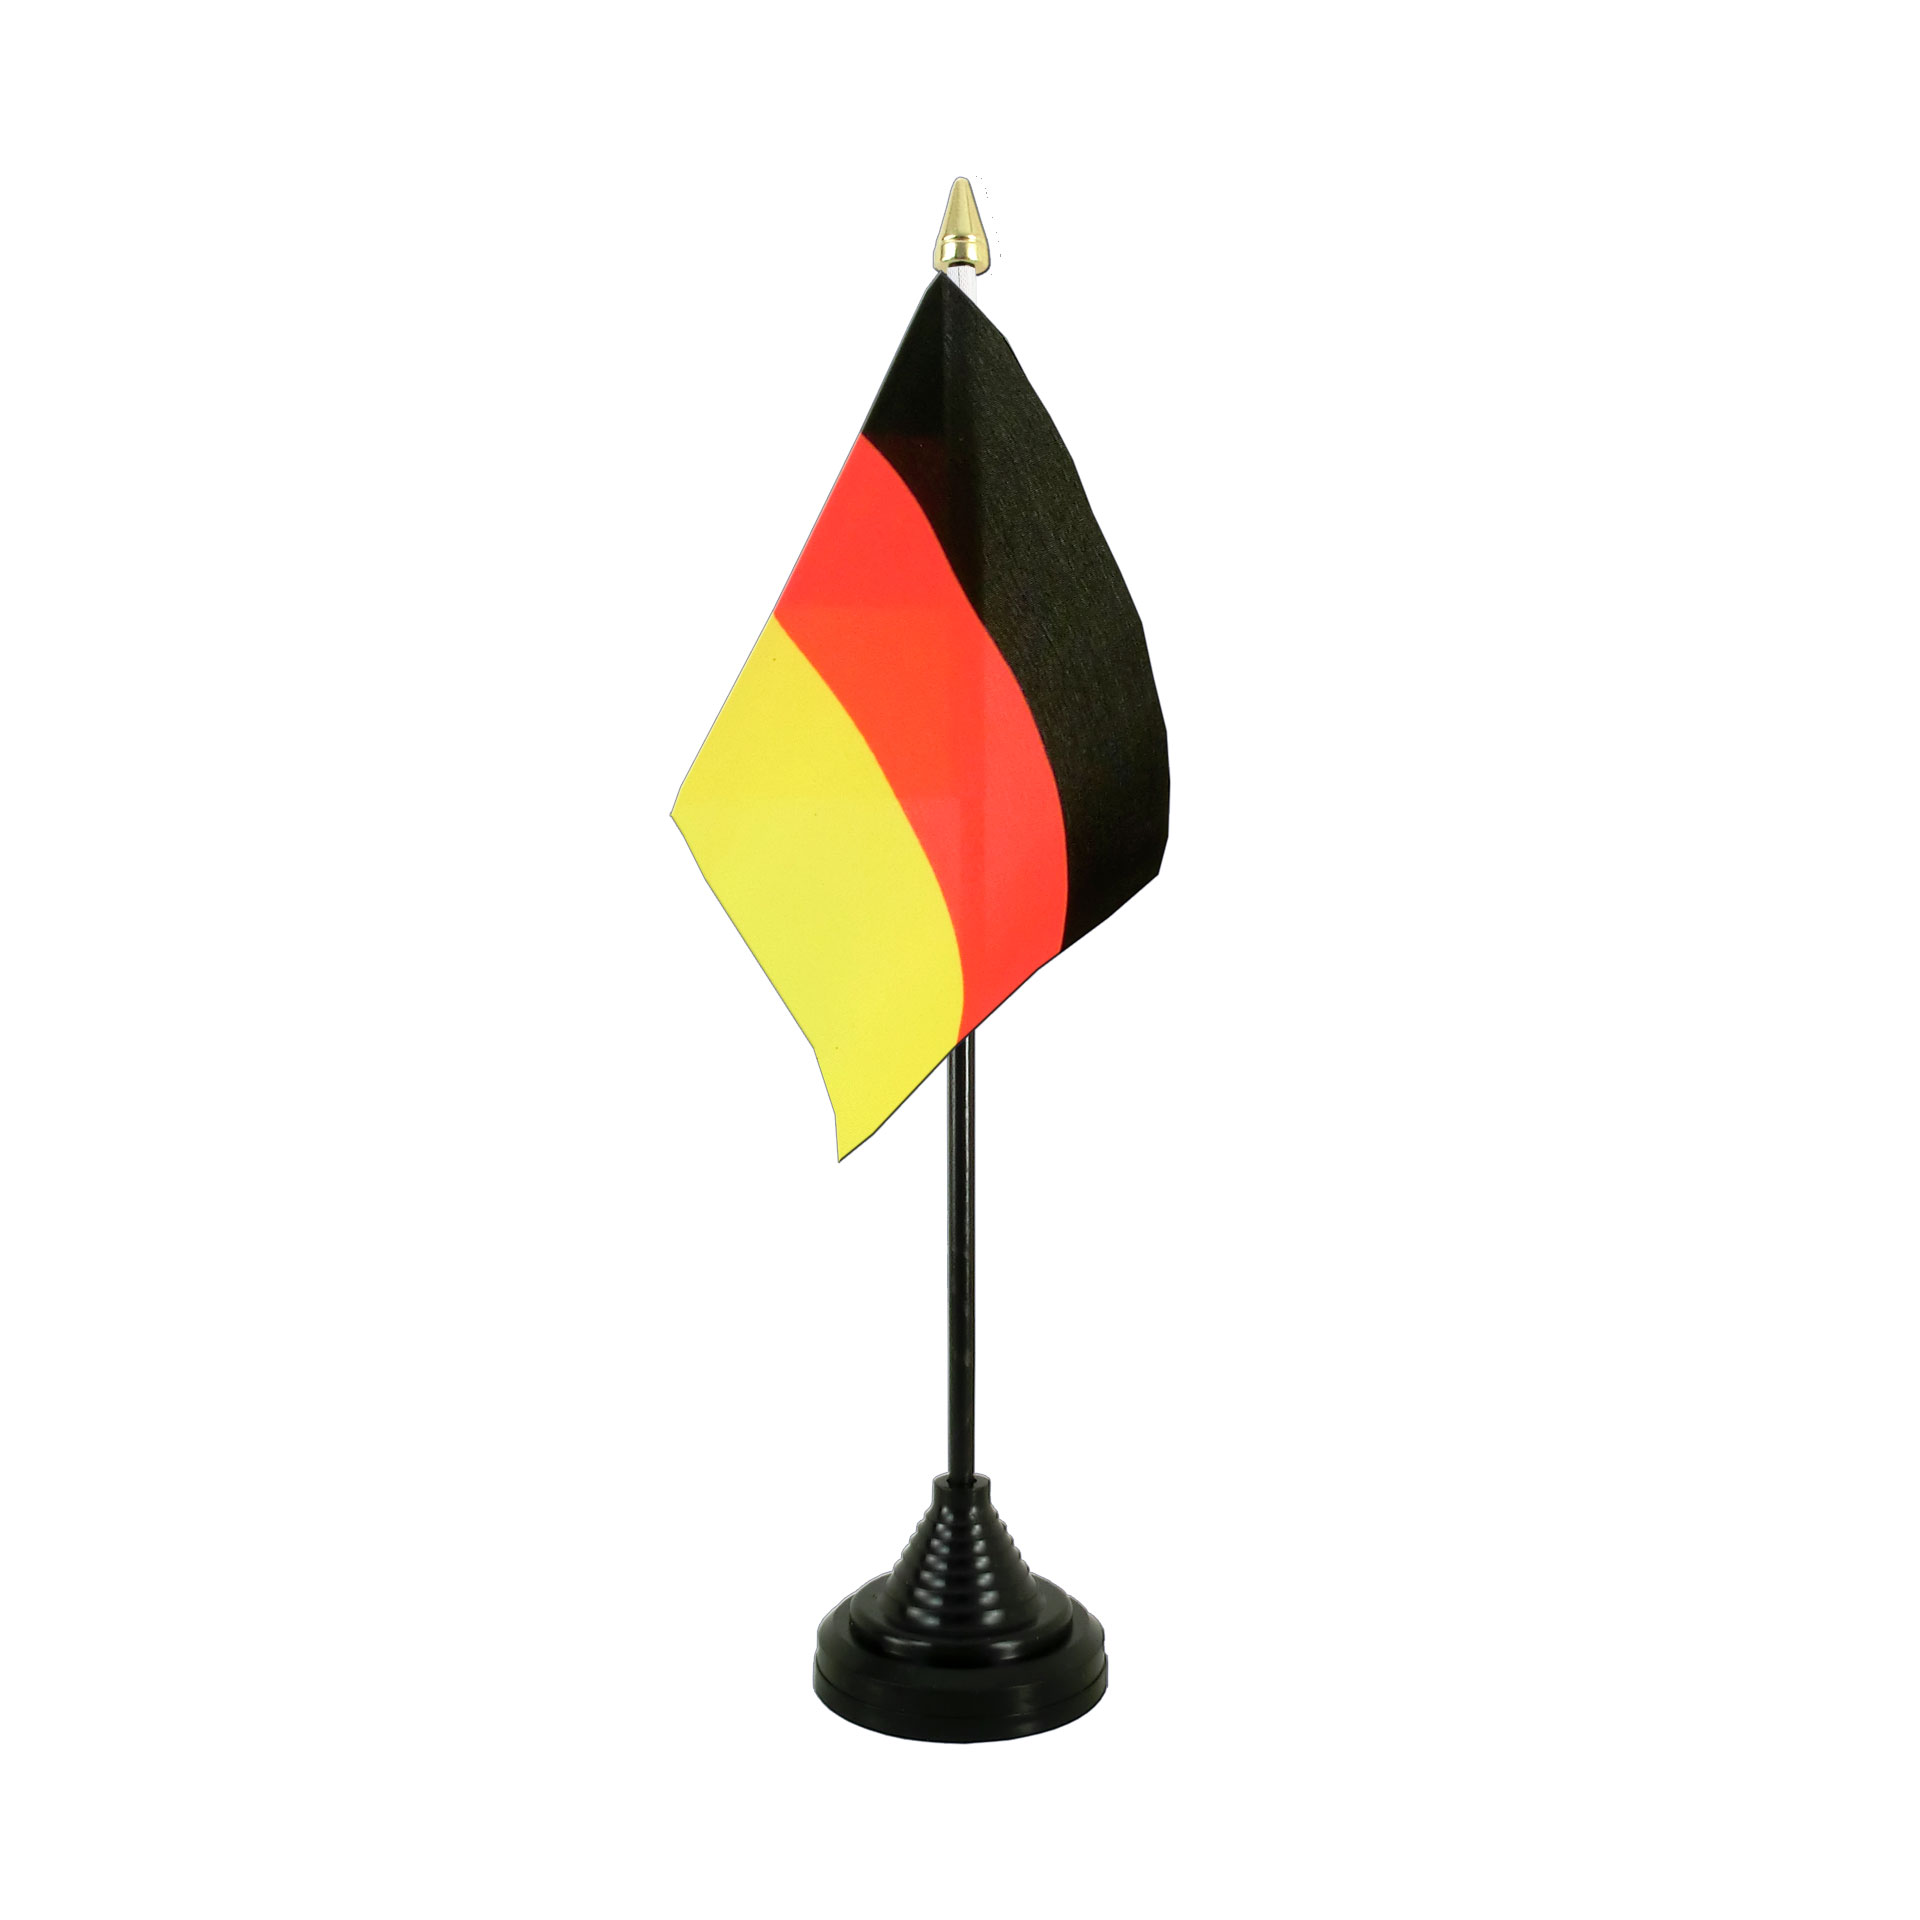 Tischflagge Juist Tischfahne Fahne Flagge 10 x 15 cm 